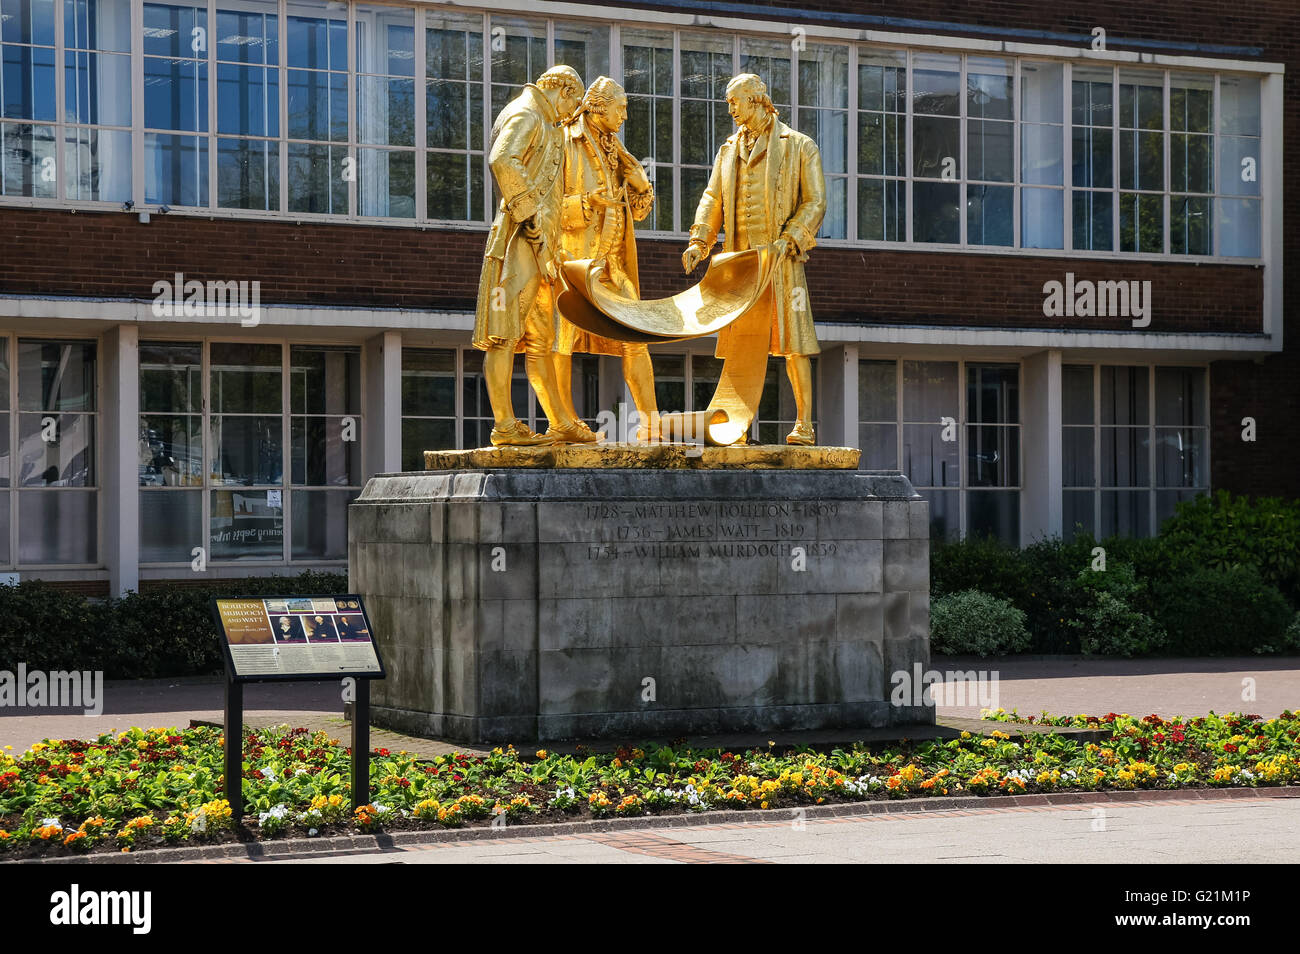 La estatua de bronce dorado de Matthew Boulton, James Watt y William Murdoch por William Bloye en Broad Street en Birmingham, Reino Unido Foto de stock